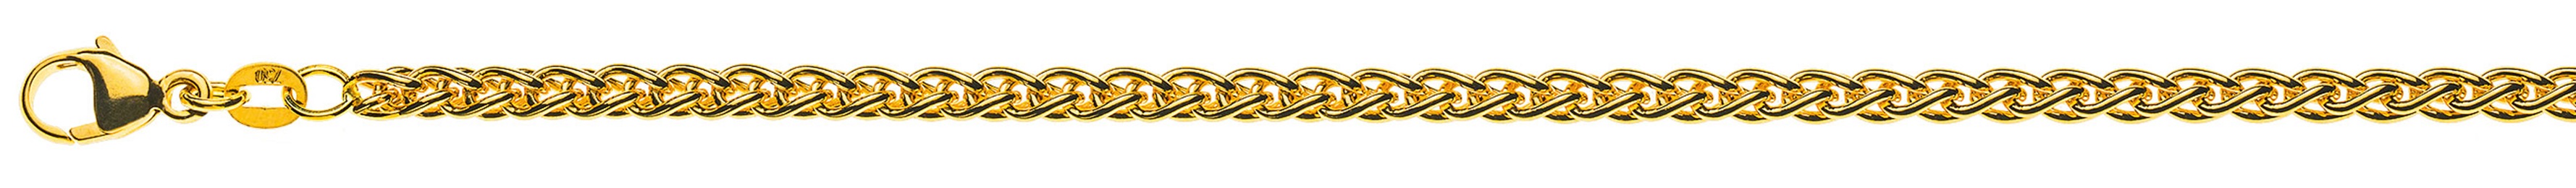 AURONOS Prestige Halskette Gelbgold 18K Zopfkette 45cm 3.3mm